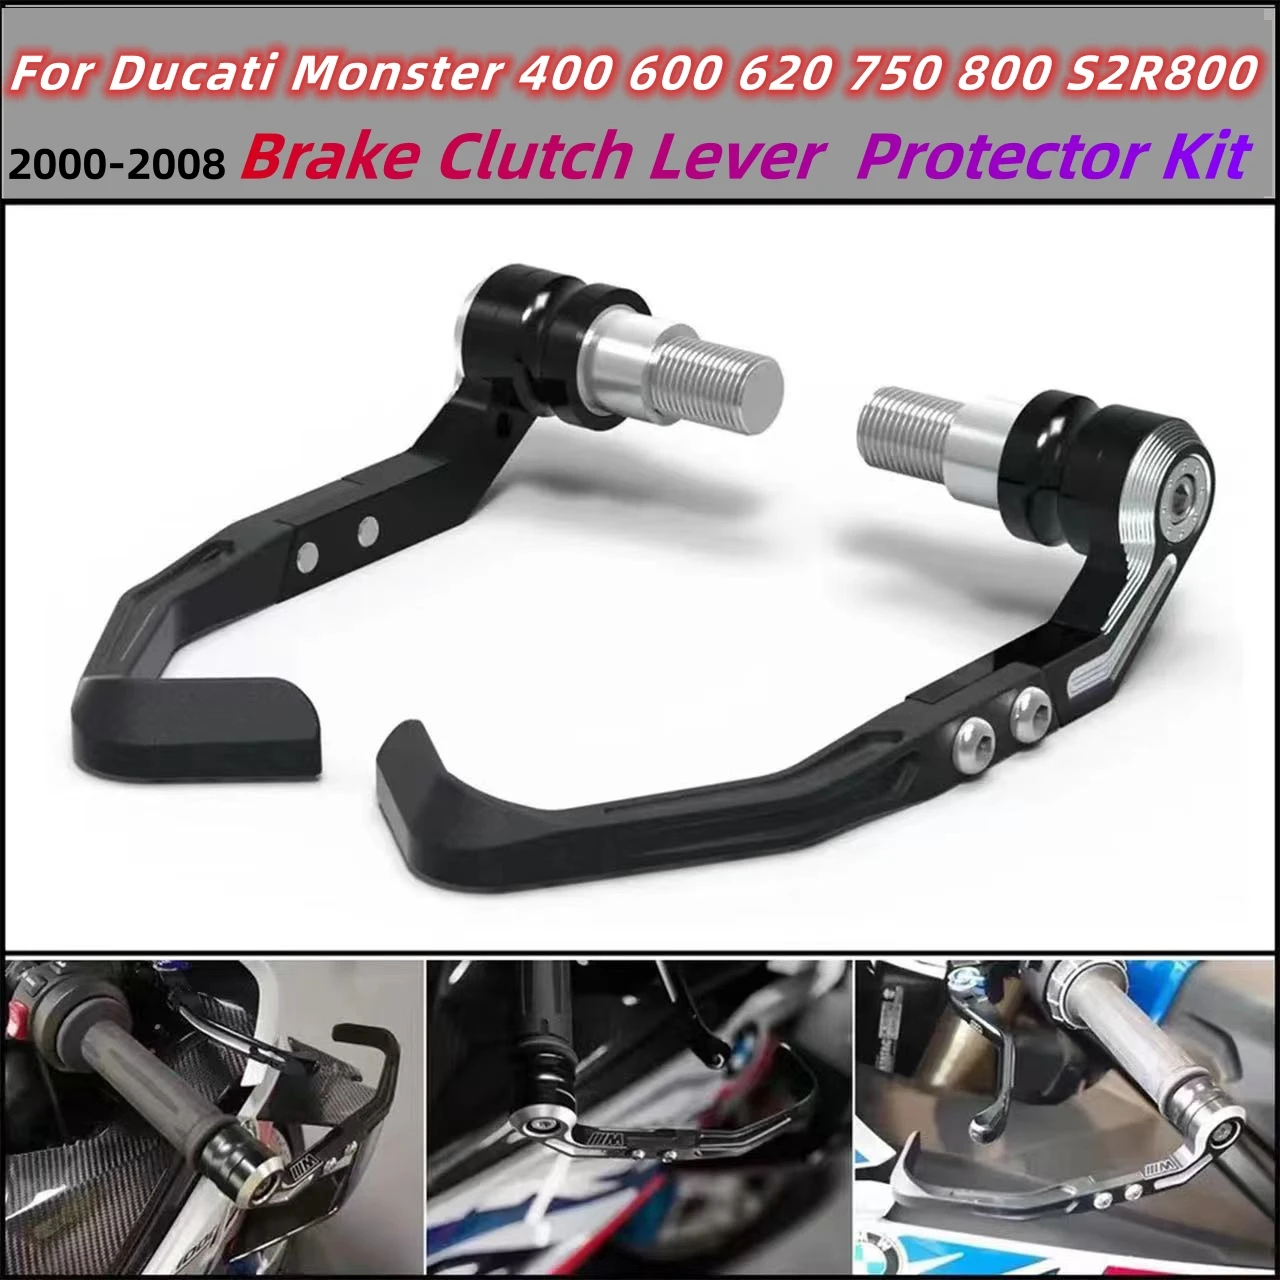 

Комплект для защиты рычага тормоза и сцепления мотоцикла для Ducati Monster 400, 600, 620, 750, 800, S2R800, 2000-2008